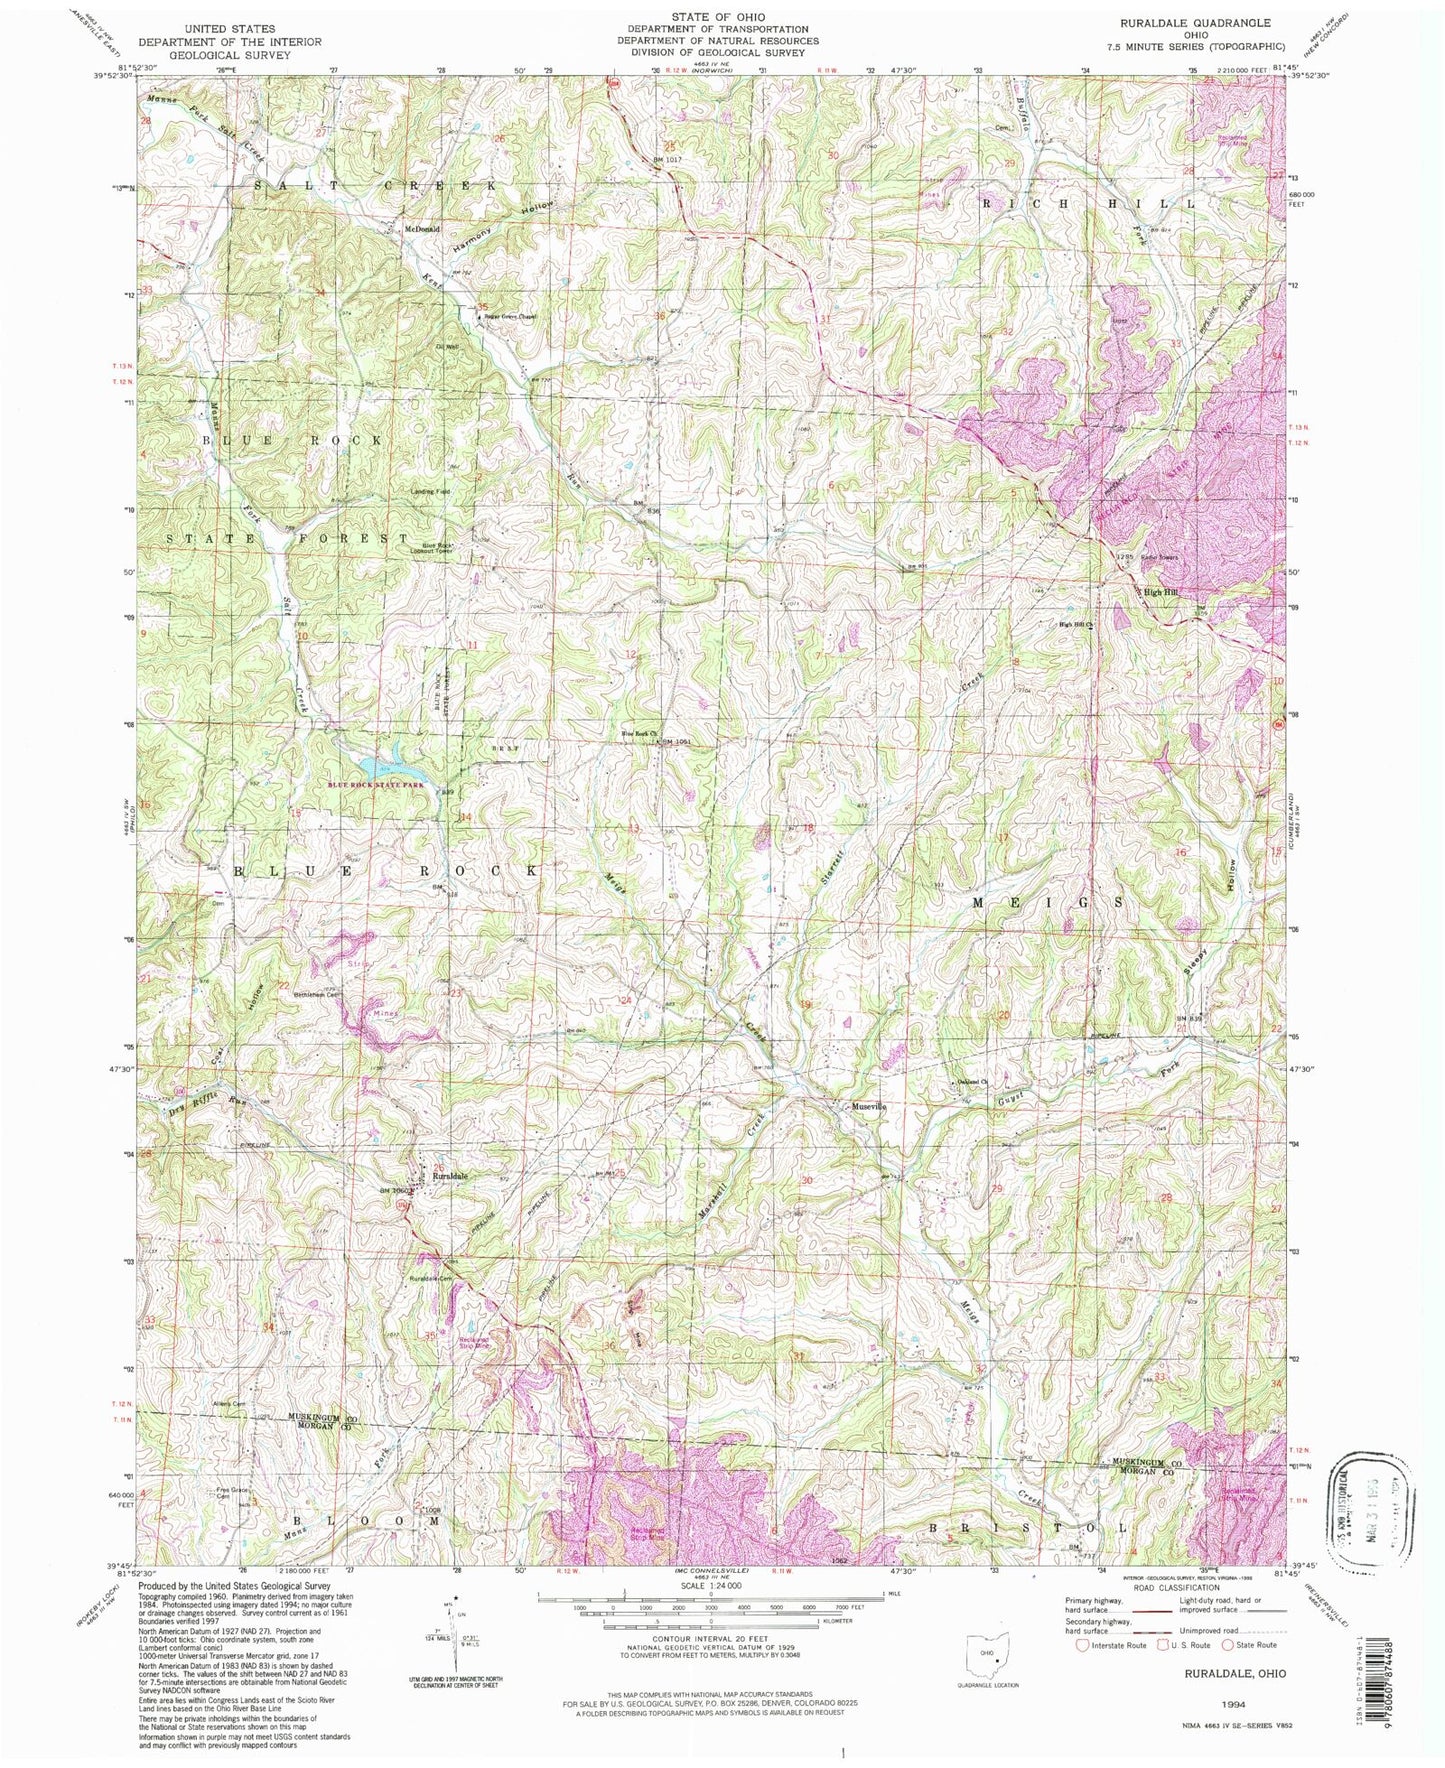 Classic USGS Ruraldale Ohio 7.5'x7.5' Topo Map Image